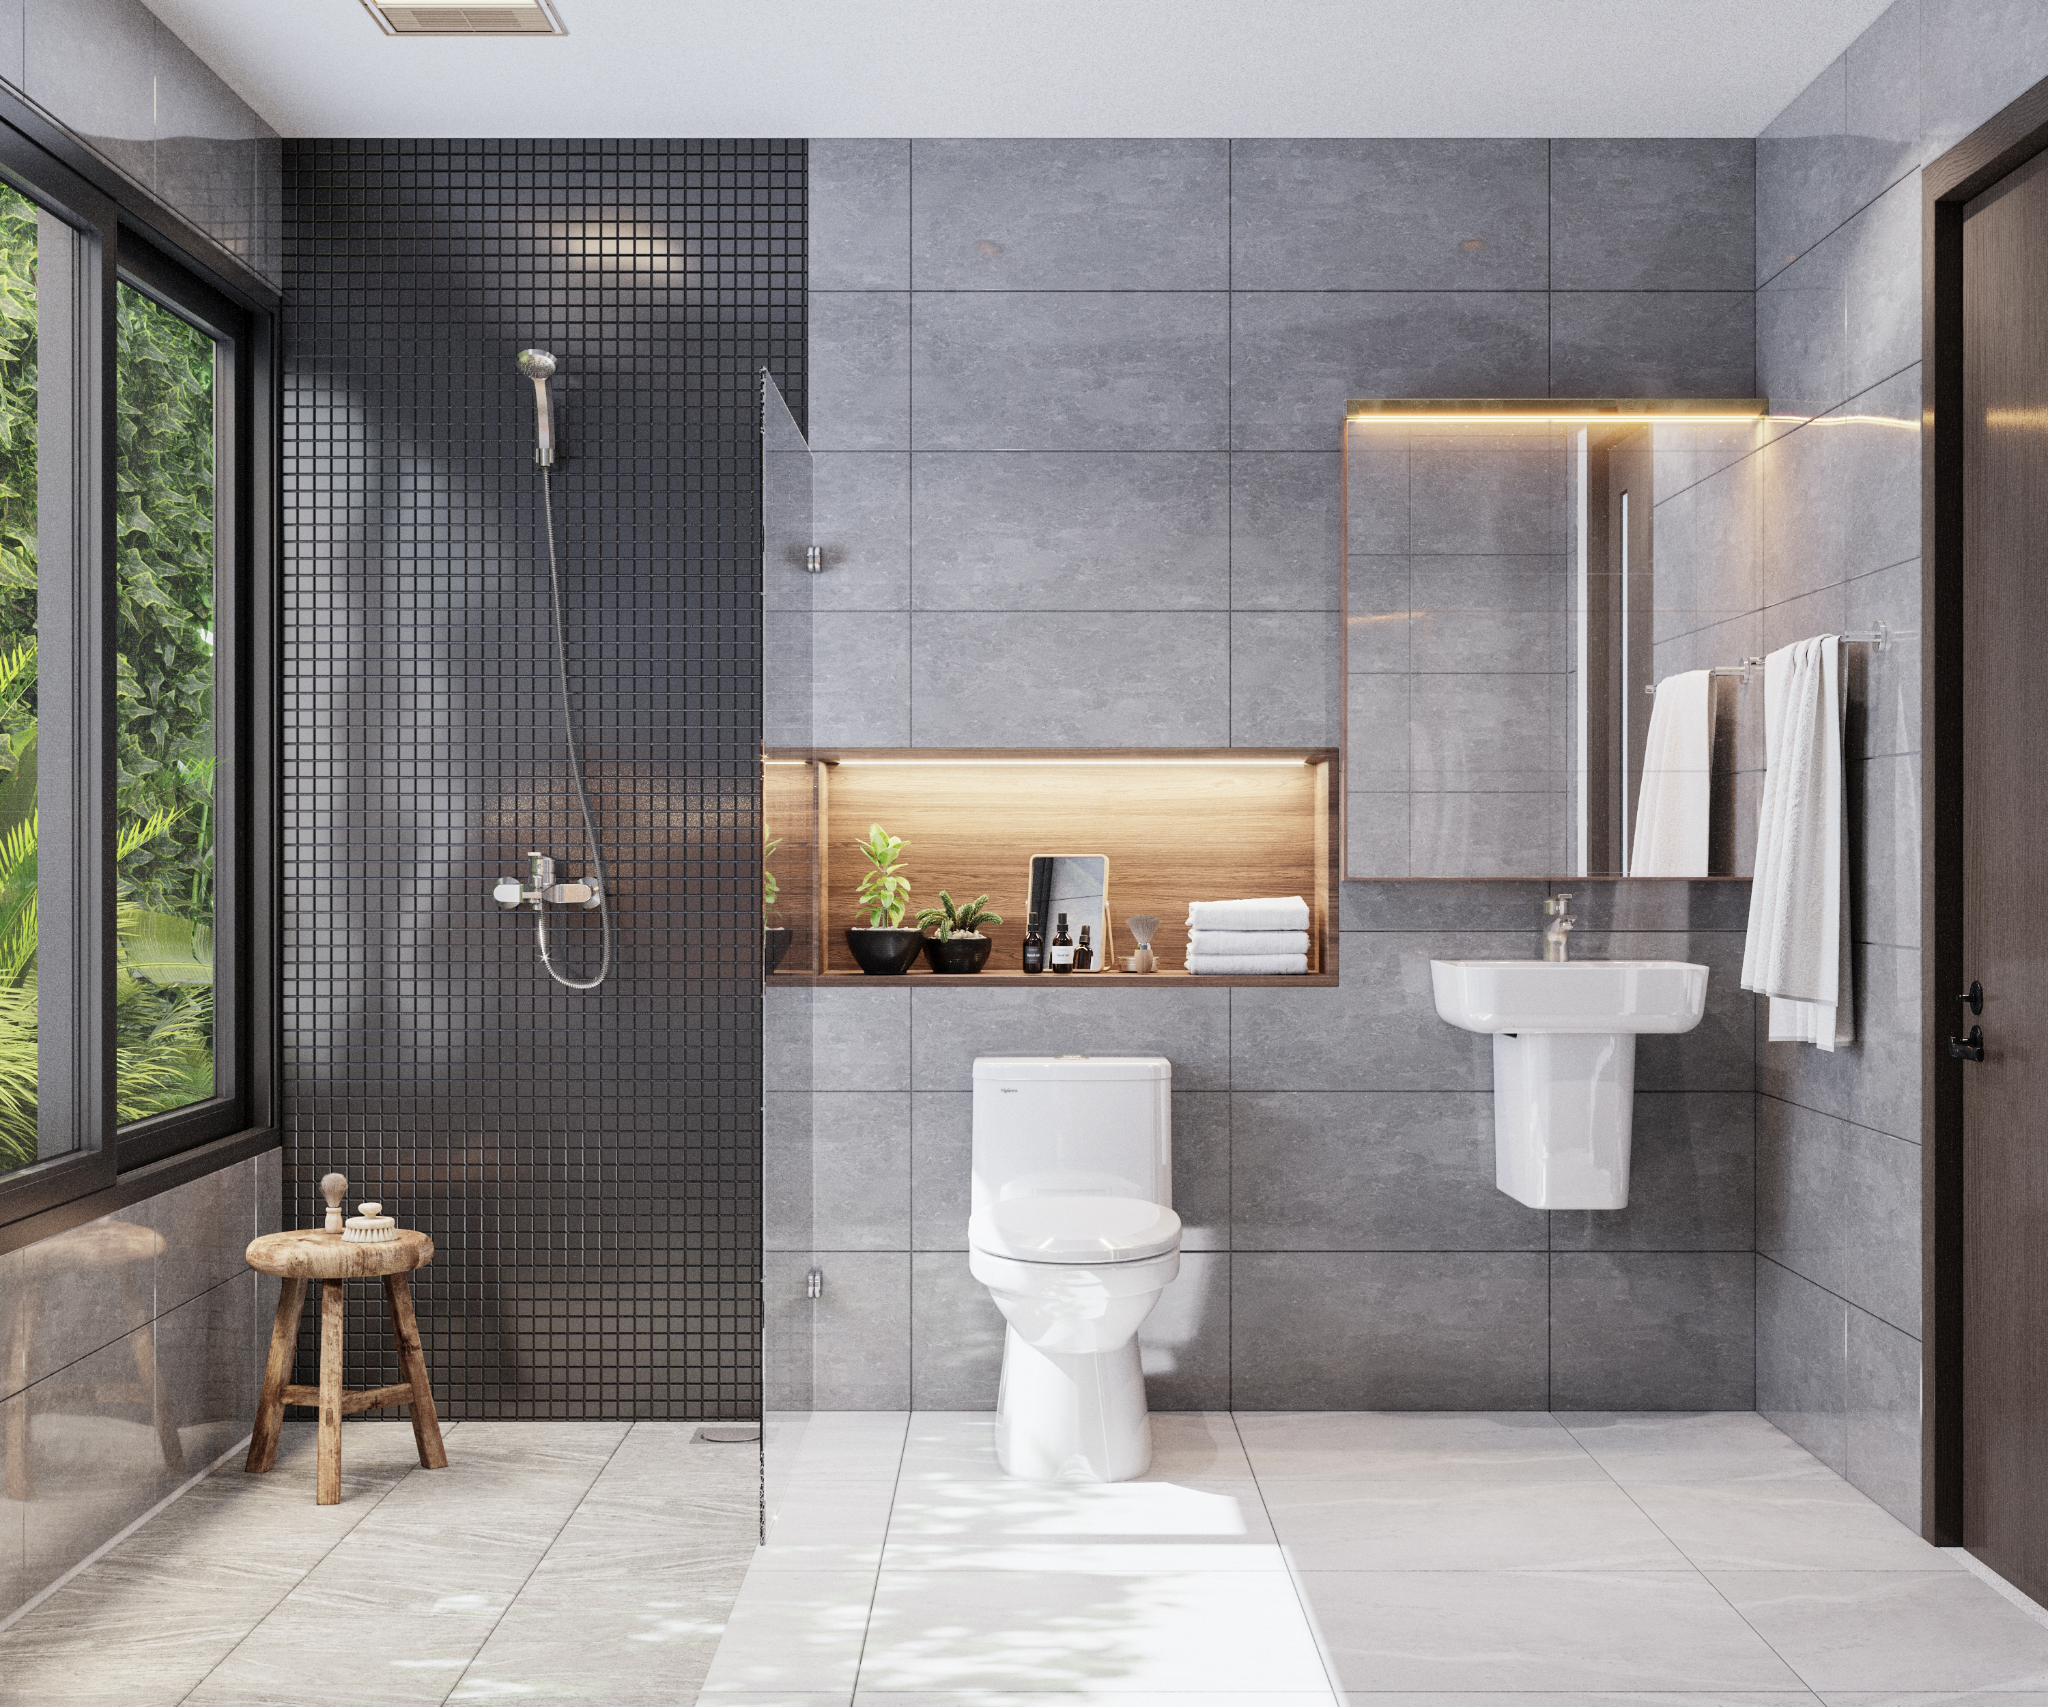 Phòng tắm hiện đại là một điều mà mỗi gia đình đều muốn có. Và với combo siêu tiết kiệm từ Viglacera, bạn sẽ sở hữu được một không gian tắm tuyệt đẹp với chi phí siêu tiết kiệm. Sản phẩm này sẽ khiến bạn cảm thấy tràn đầy năng lượng cho một ngày mới.